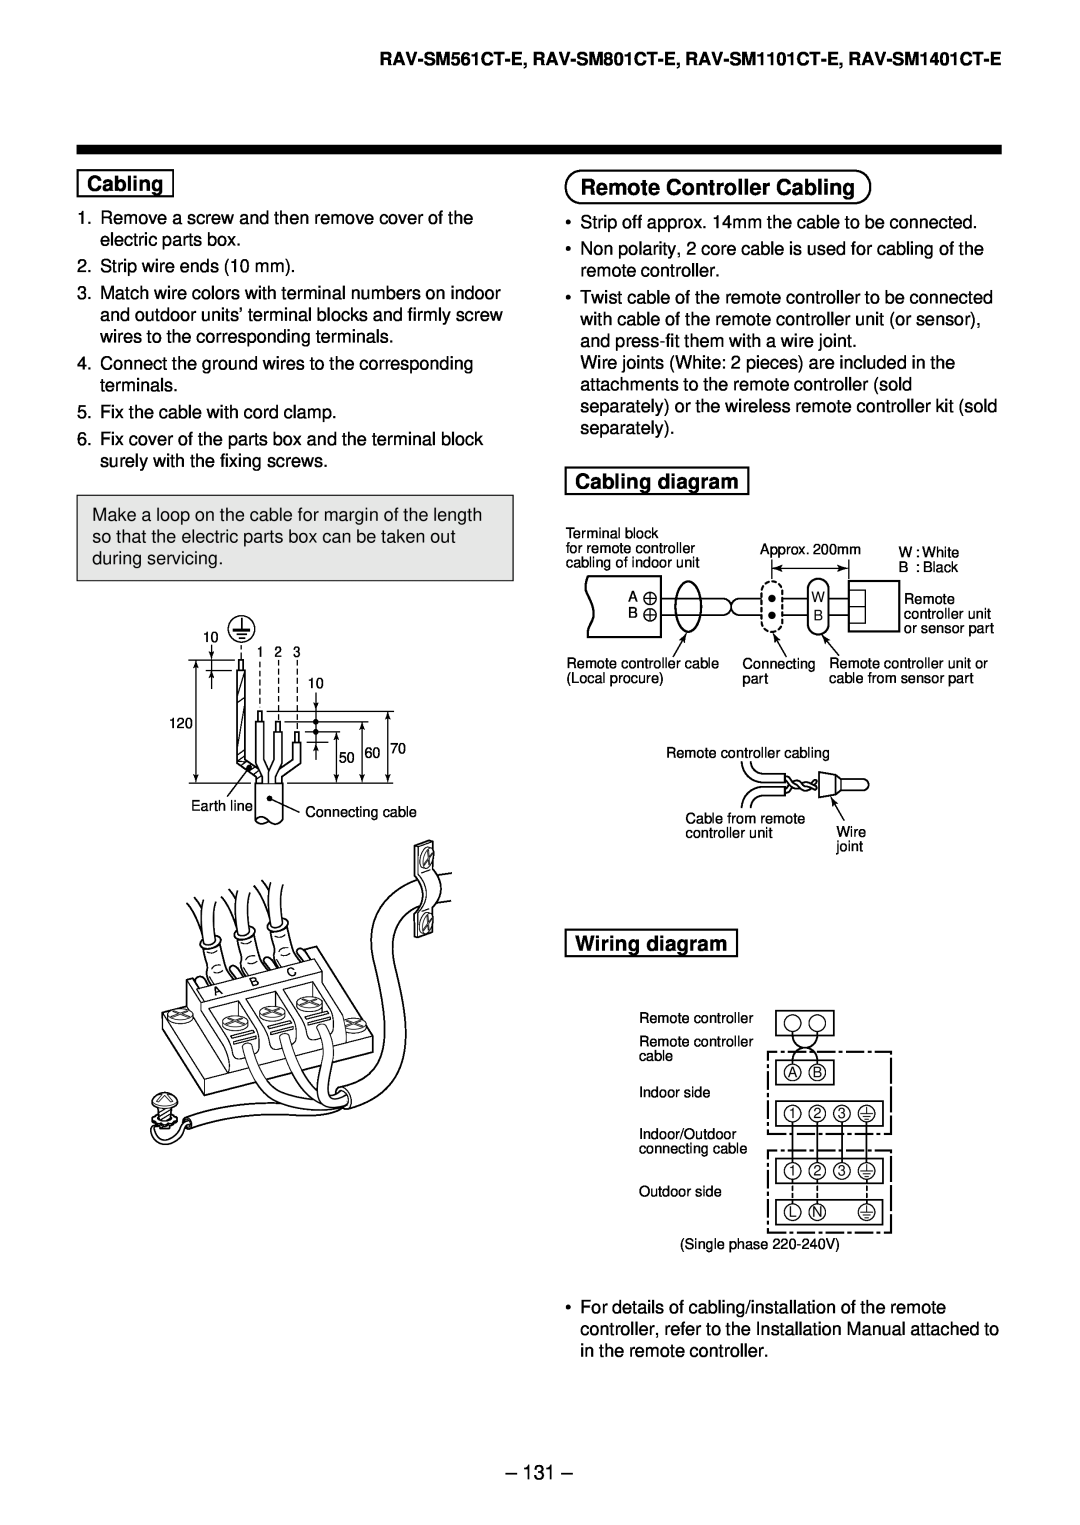 Toshiba RAV-SM561AT-E, RAV-SM1101AT-E, RAV-SM1401AT-E Remote Controller Cabling, Cabling diagram, Wiring diagram 